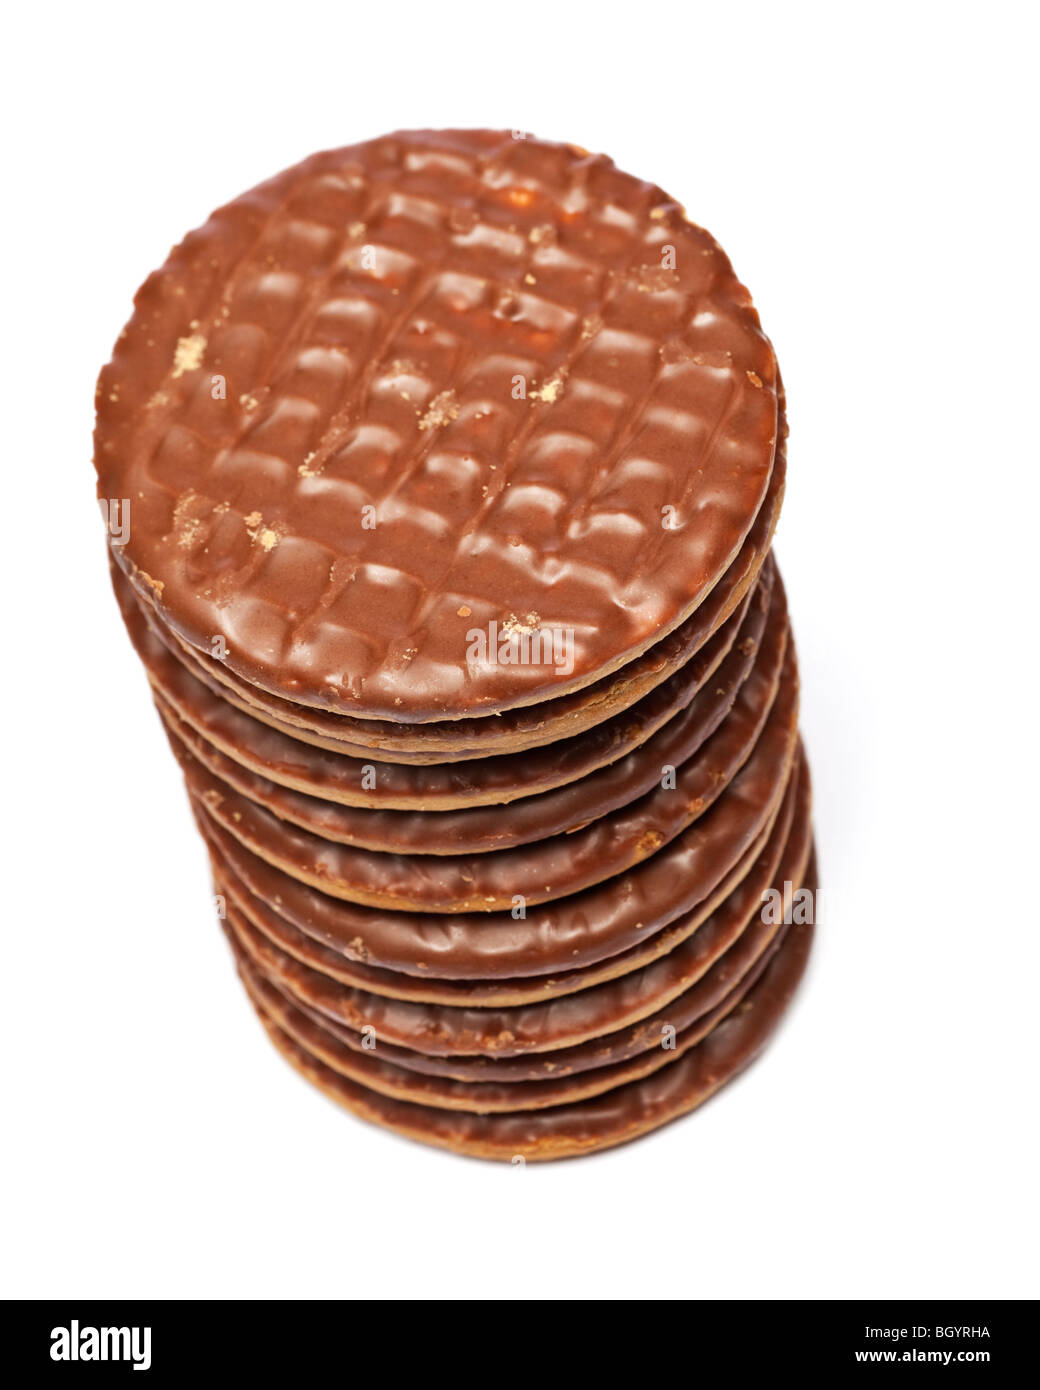 Pile de biscuits digestifs au chocolat au lait Banque D'Images